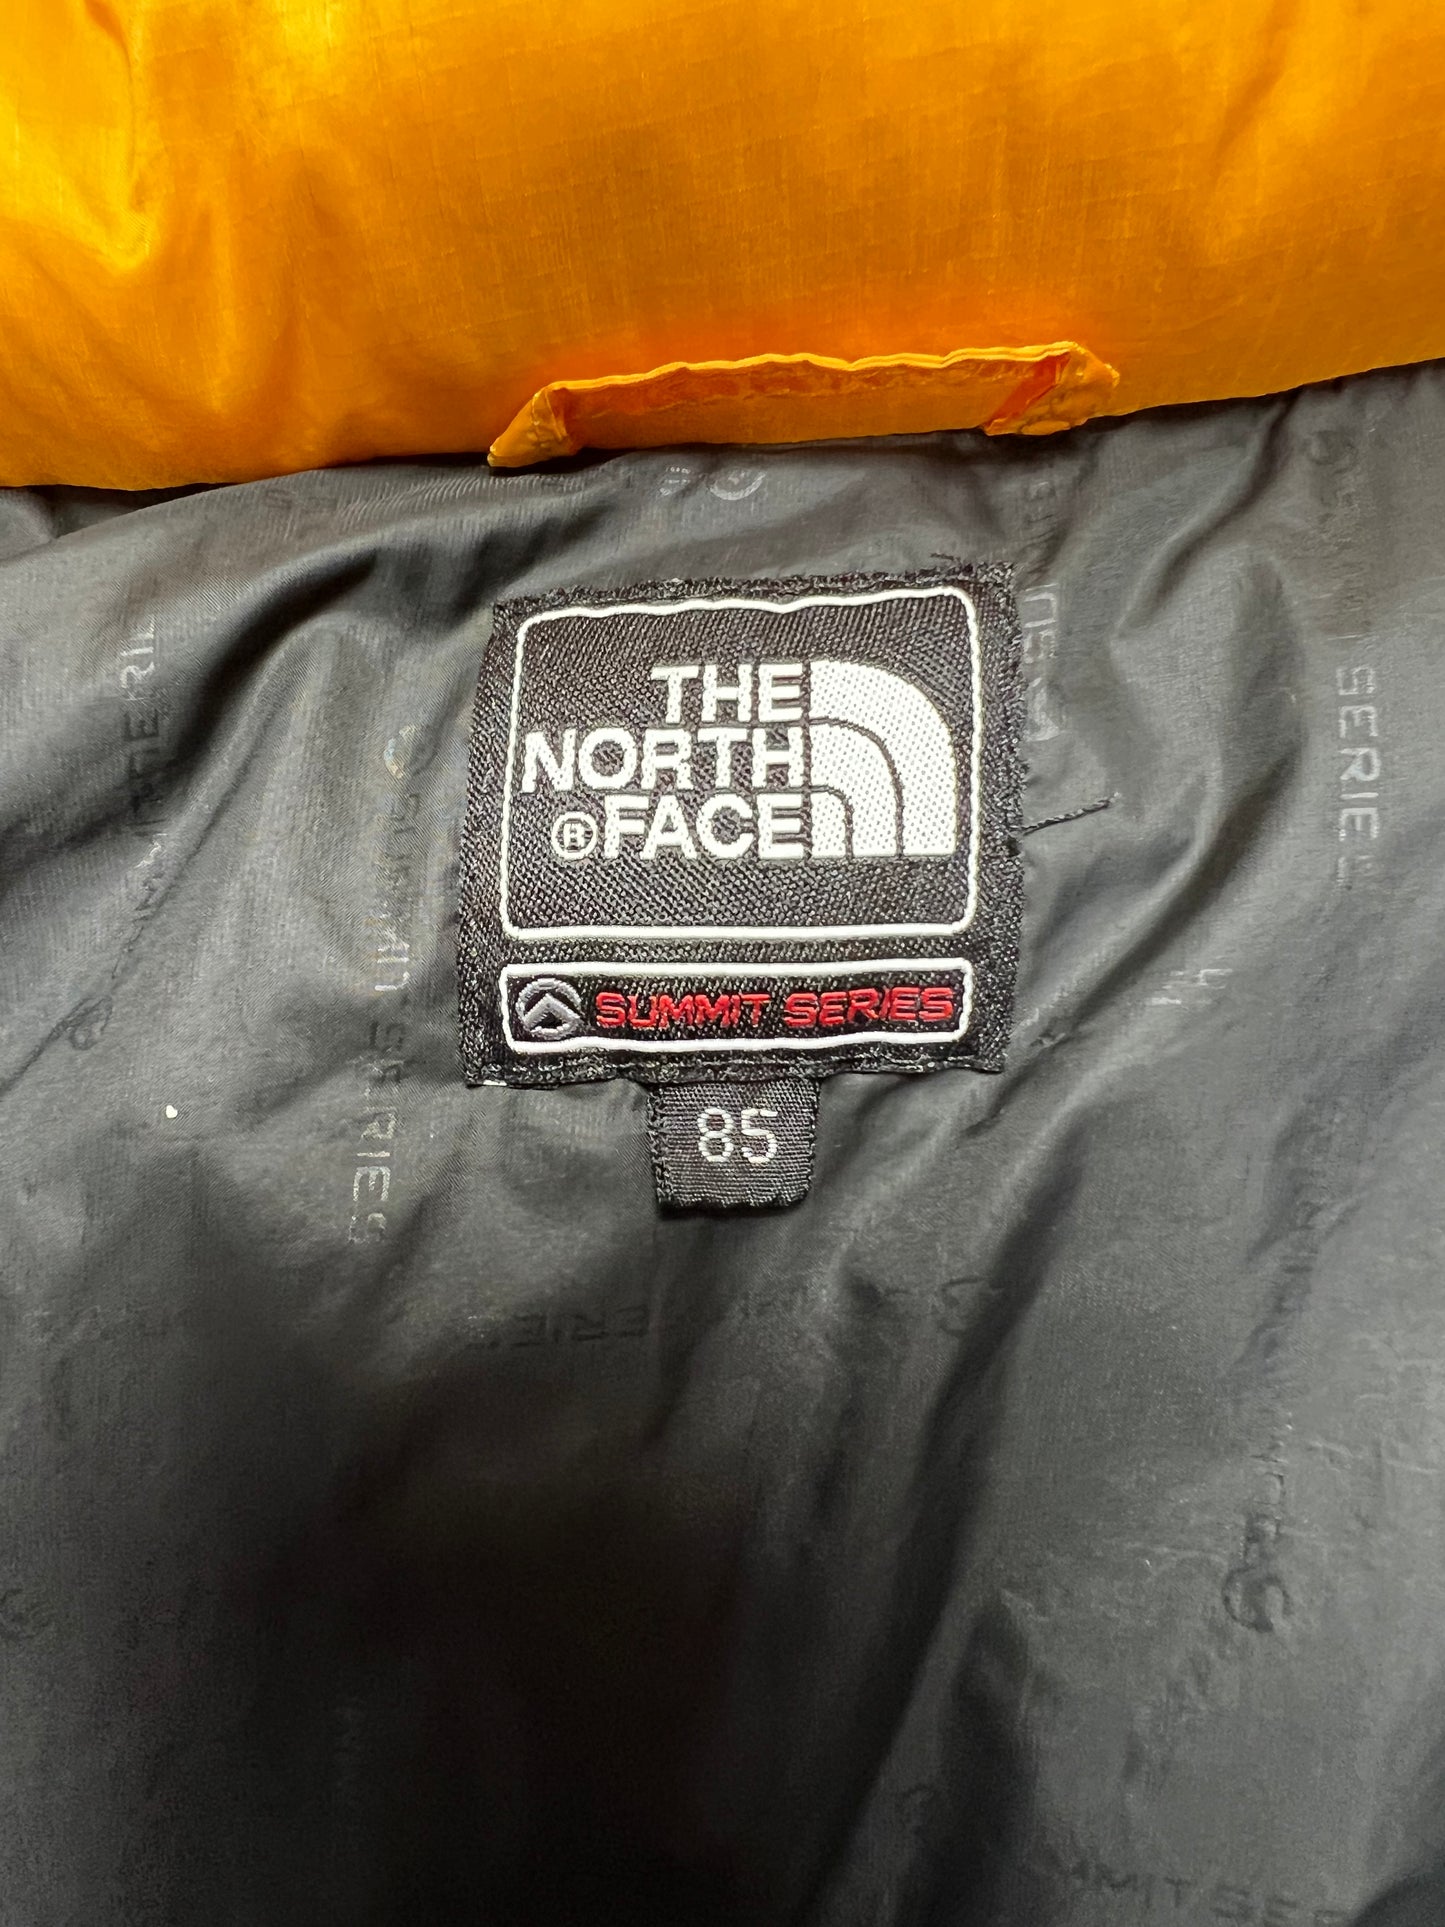 10052【THE NORTH FACE】ザノースフェイス メンズ サミットシリーズ ダウンジャケット 850フィル イエロー 85